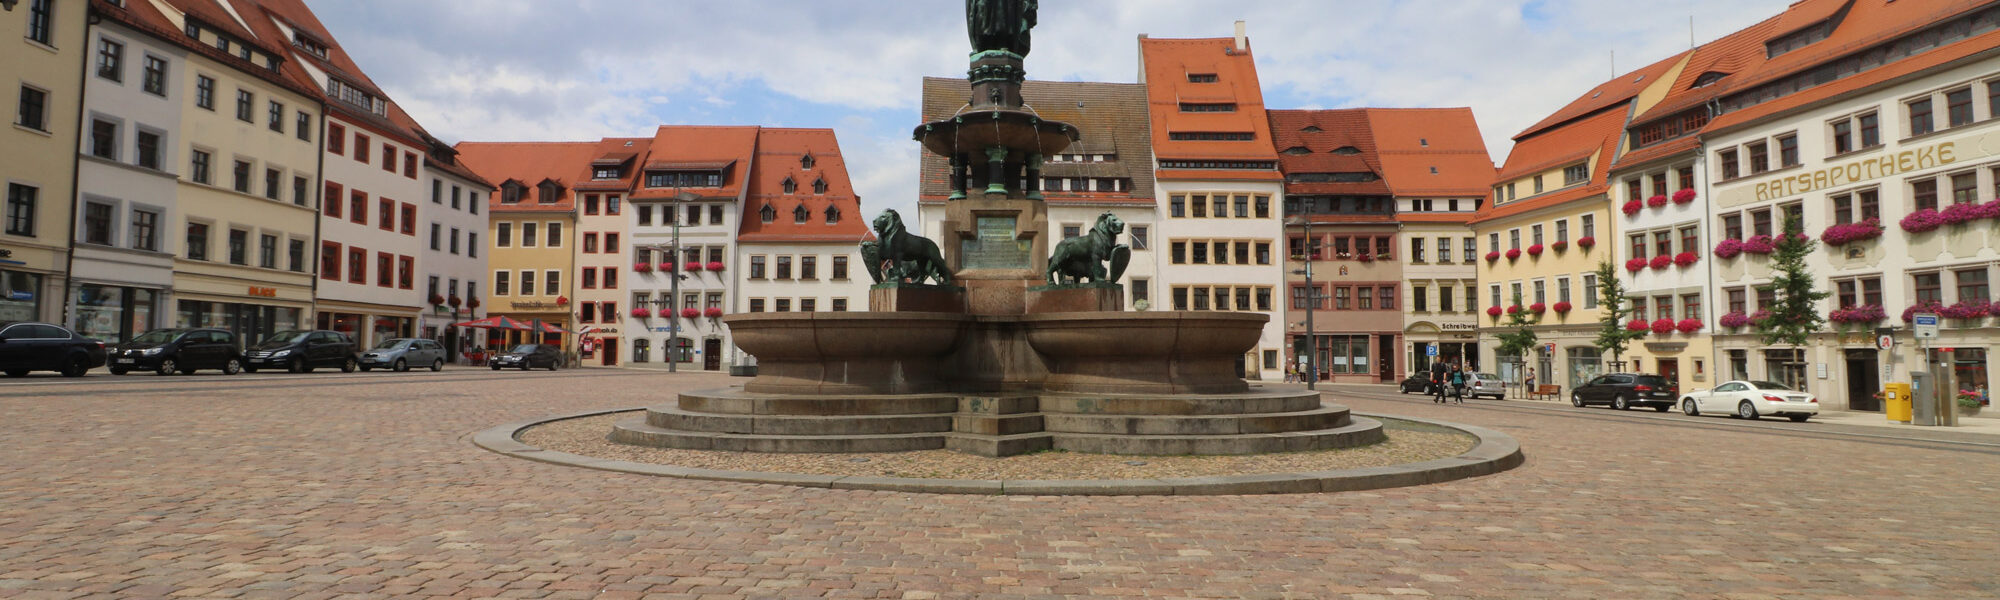 Brunnendenkmal Otto der Reiche - Freiberg - Duitsland